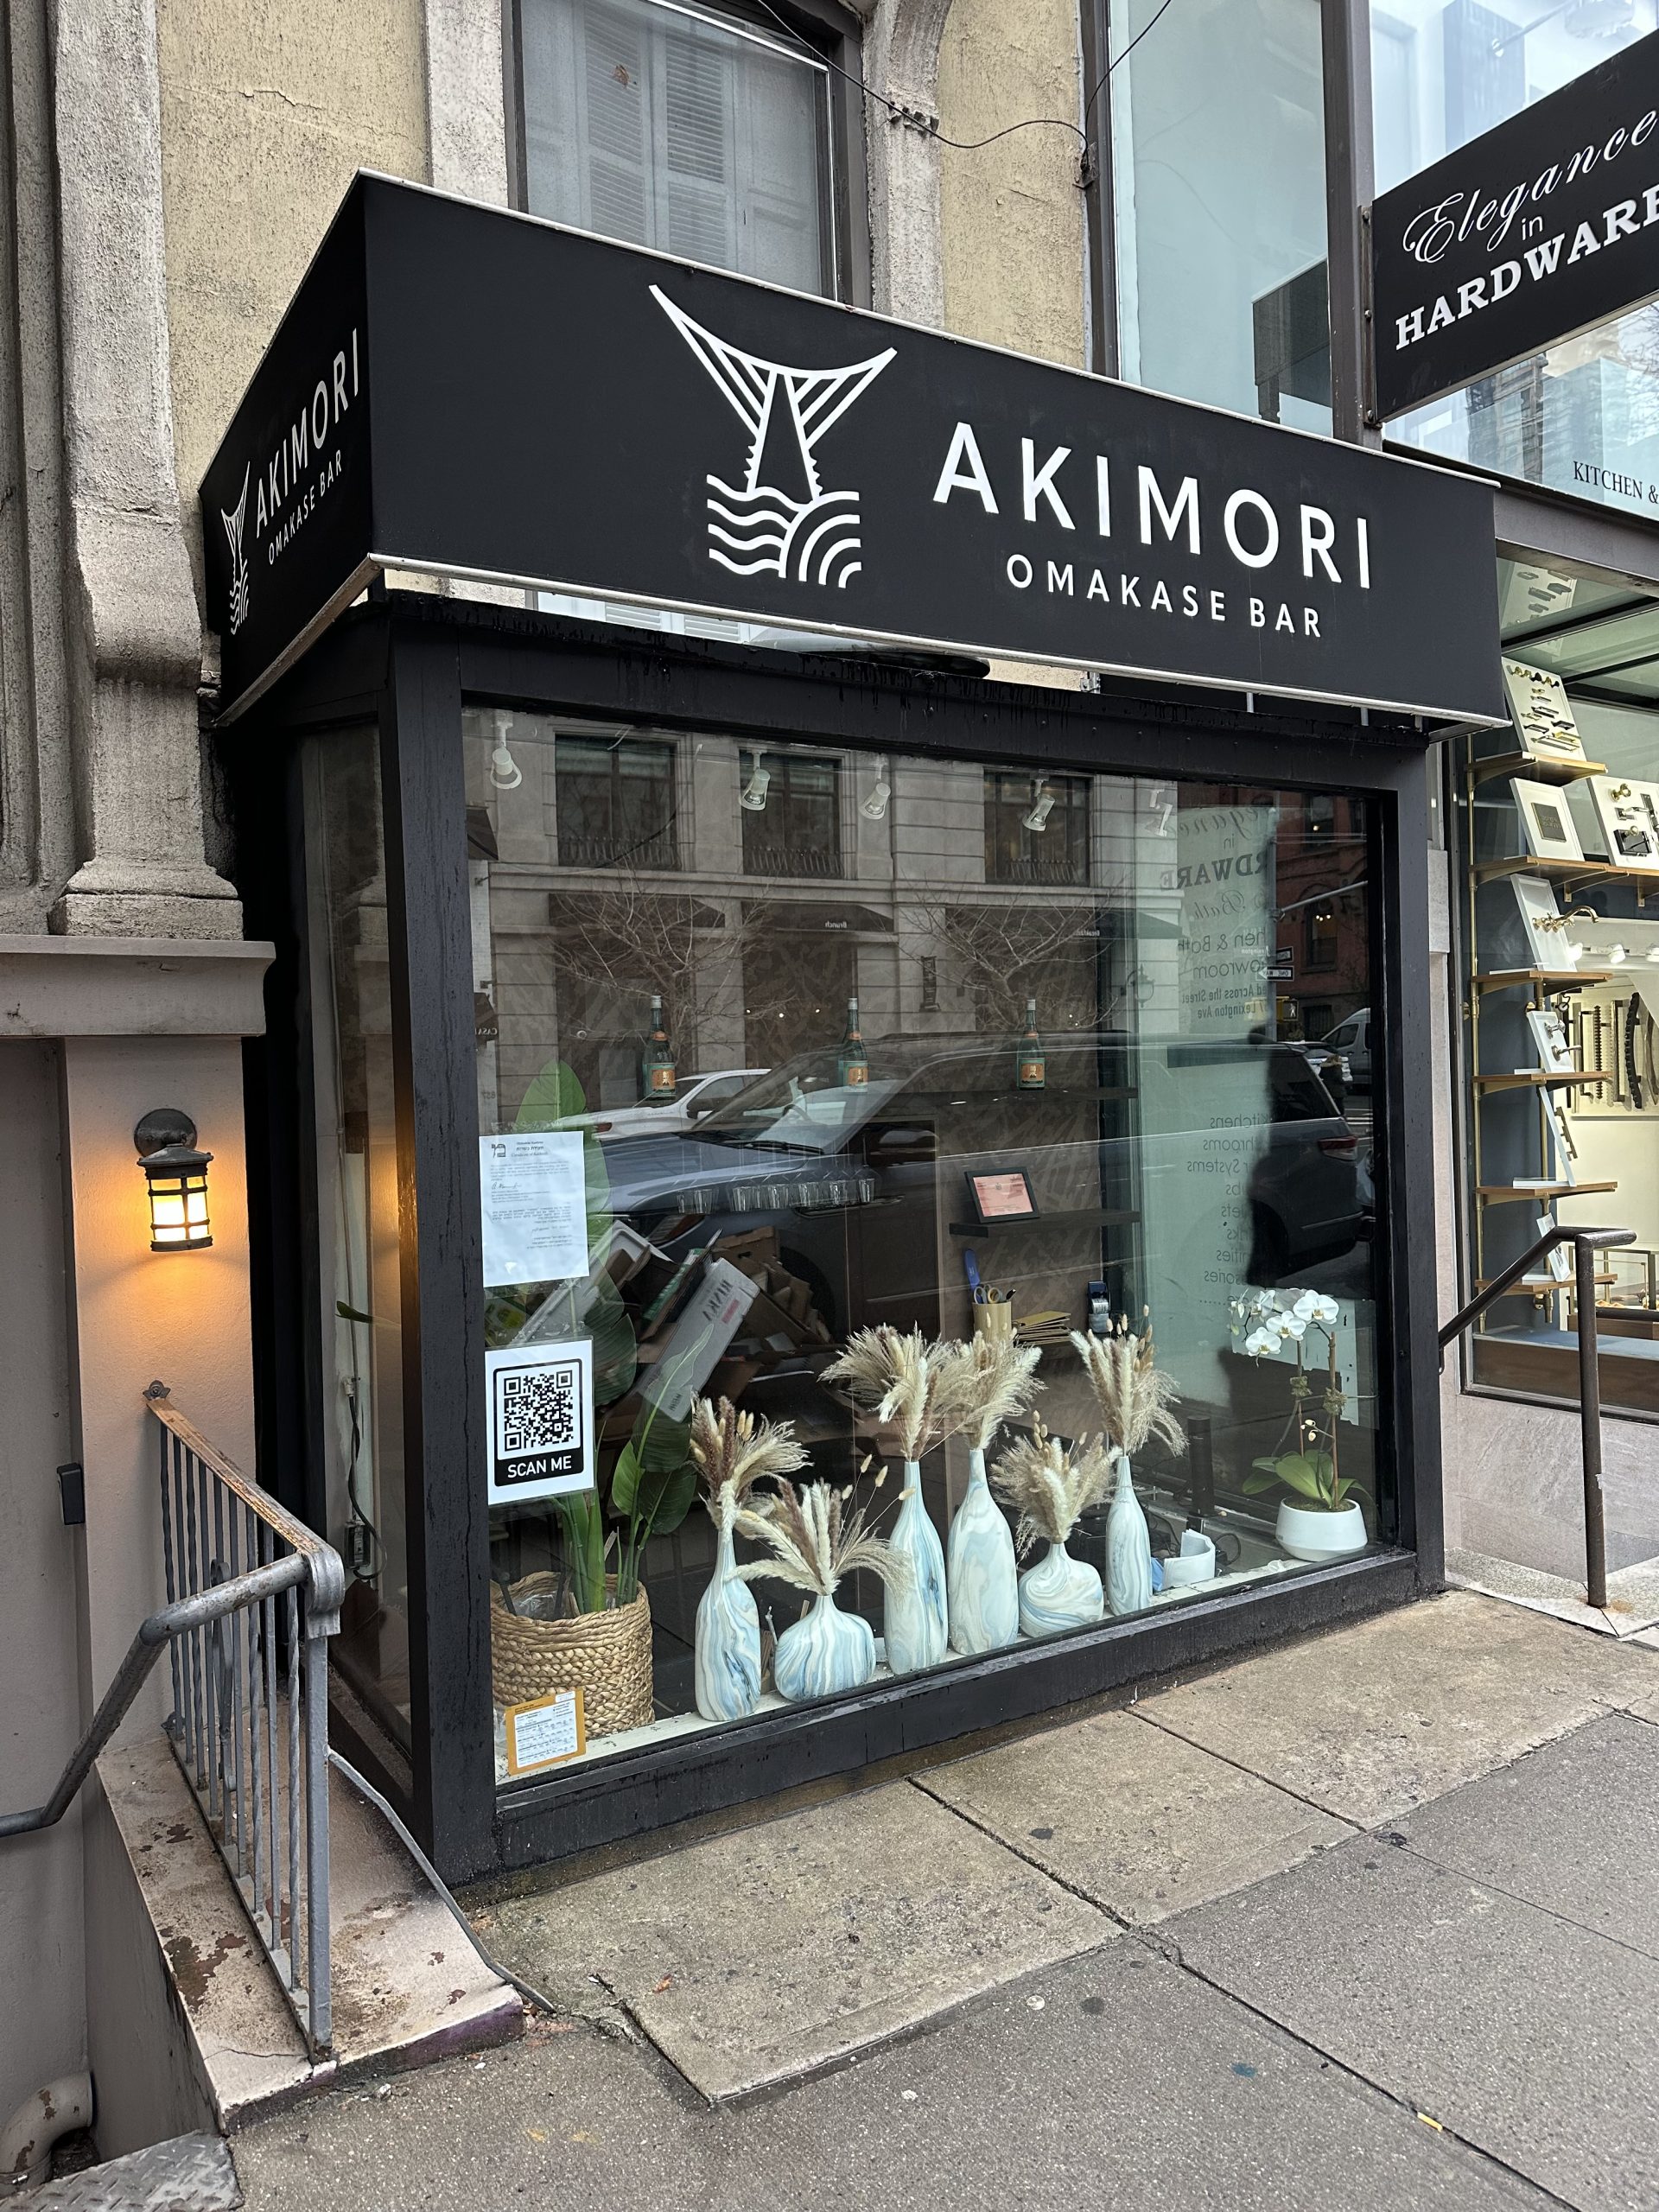 The New Akimori Omakase Bar: A Review